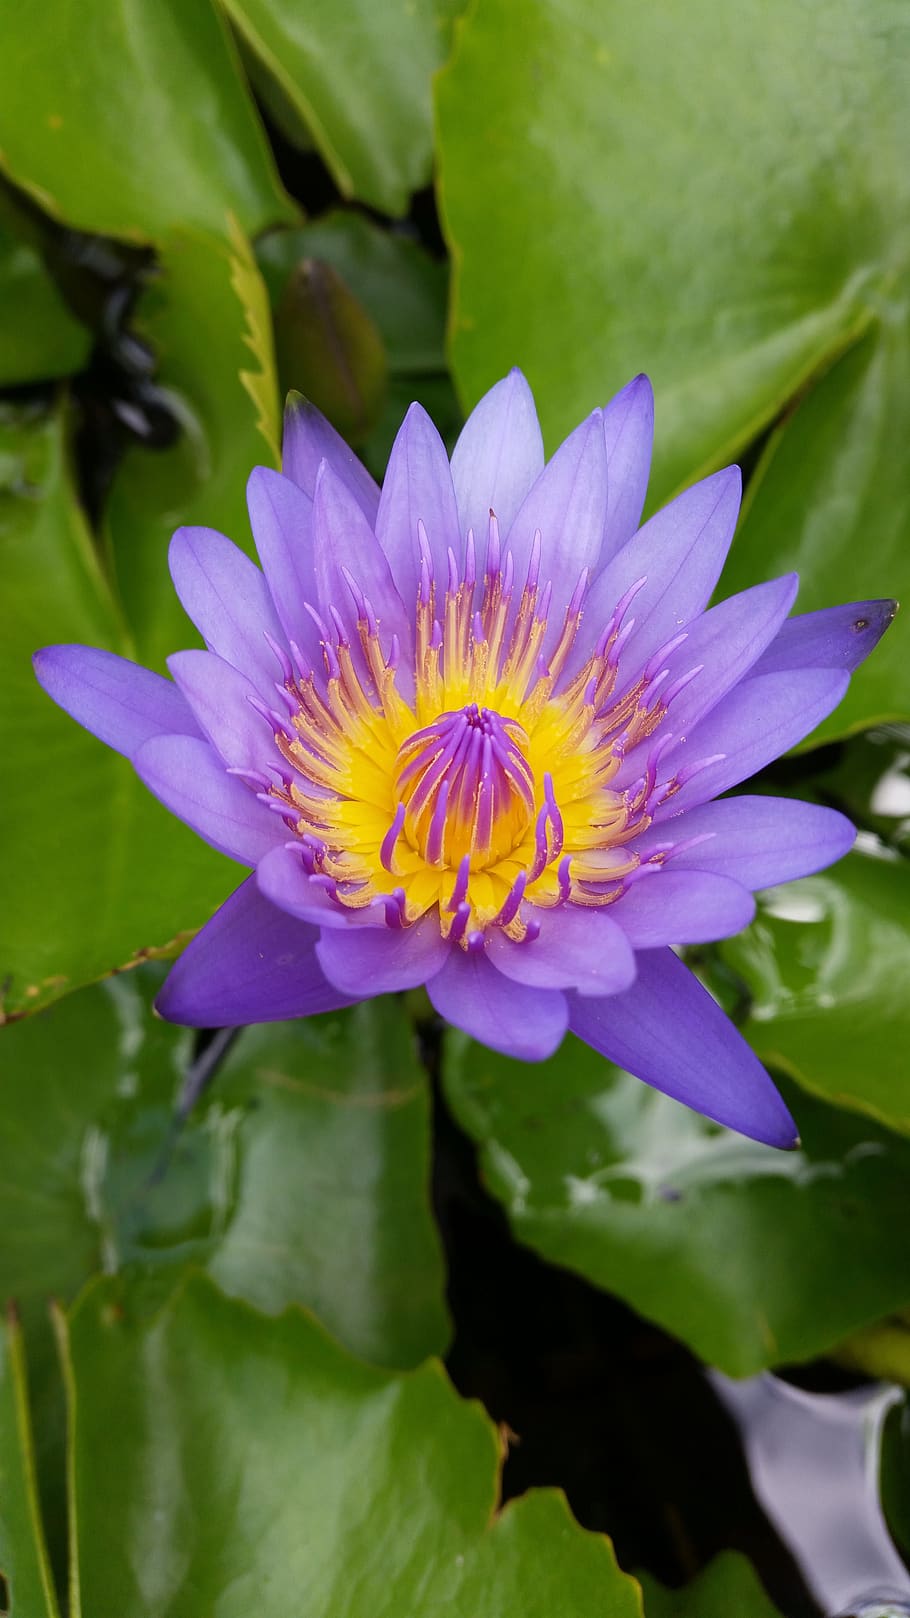 flor, loto, loto púrpura, loto tailandés, planta floreciendo, planta, belleza en la naturaleza, frescura, vulnerabilidad, crecimiento